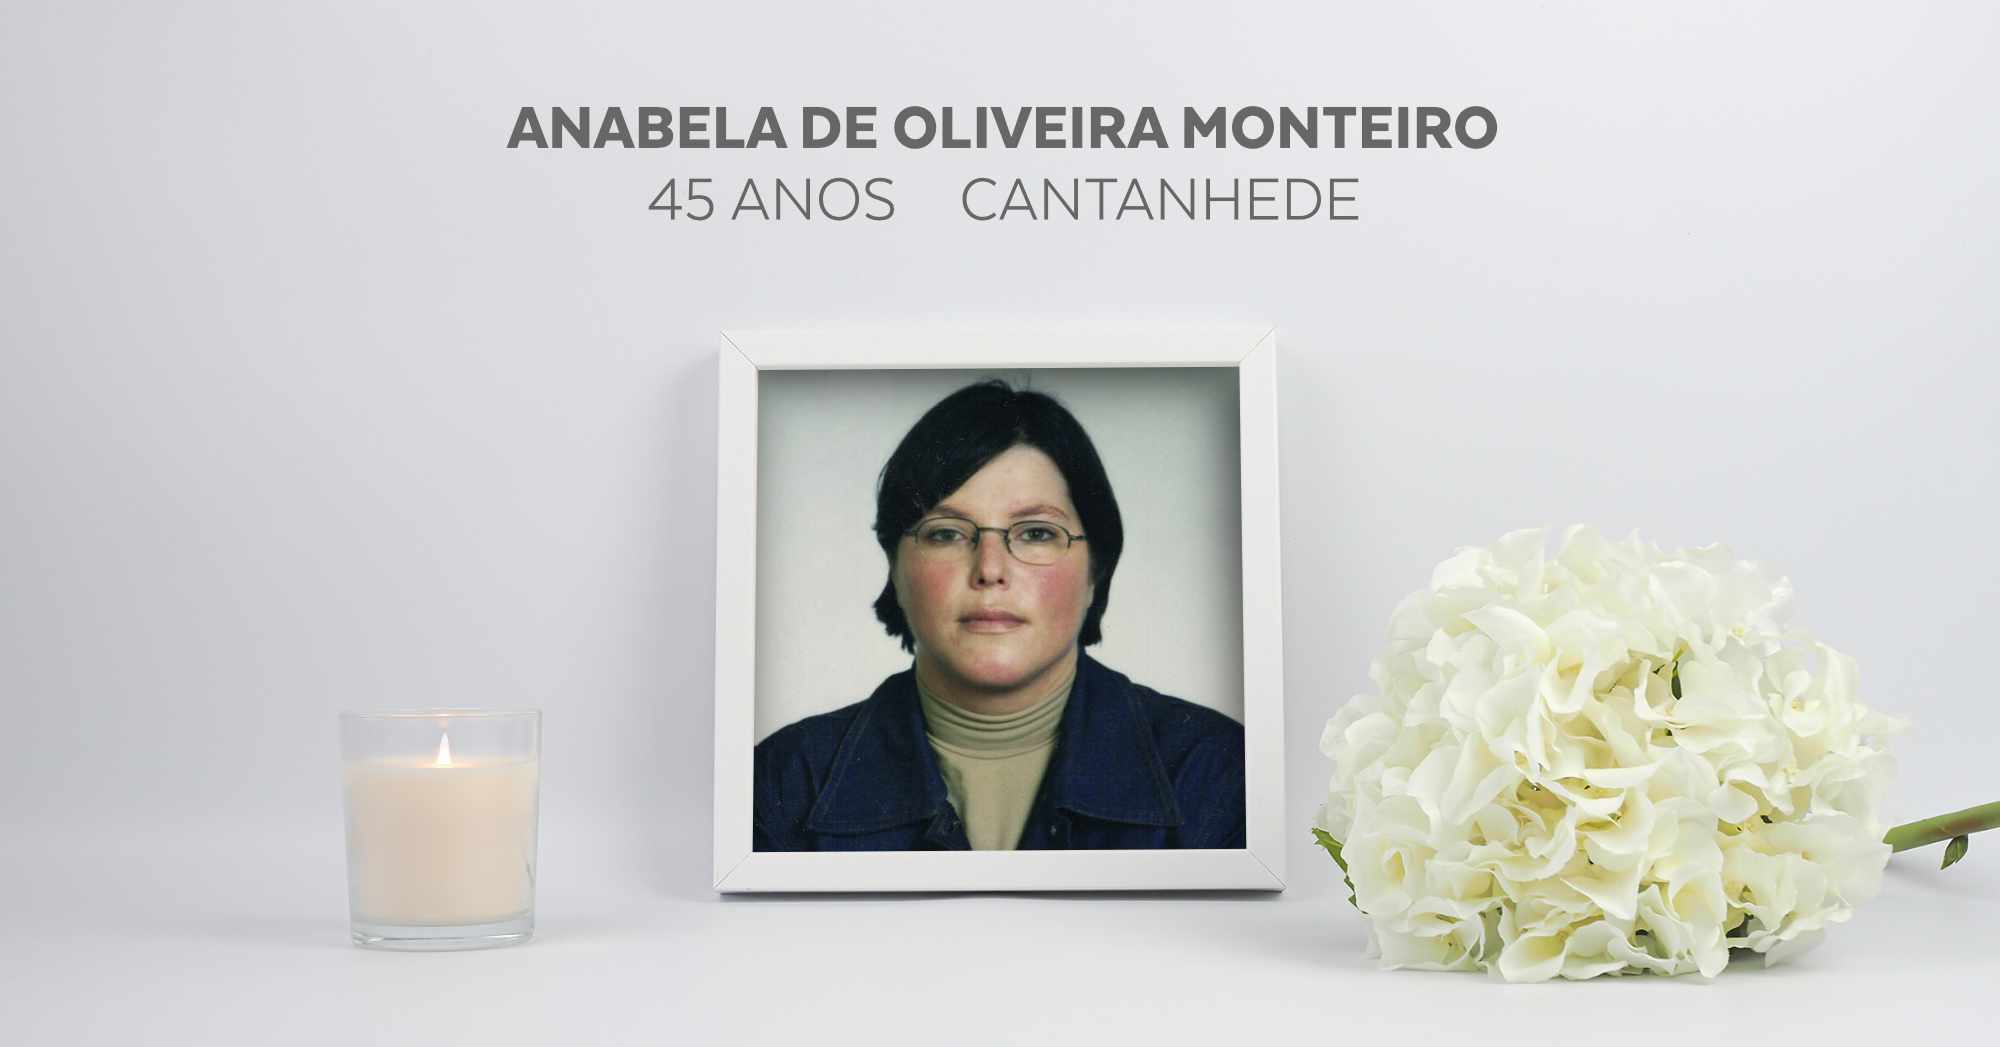 Anabela de Oliveira Monteiro